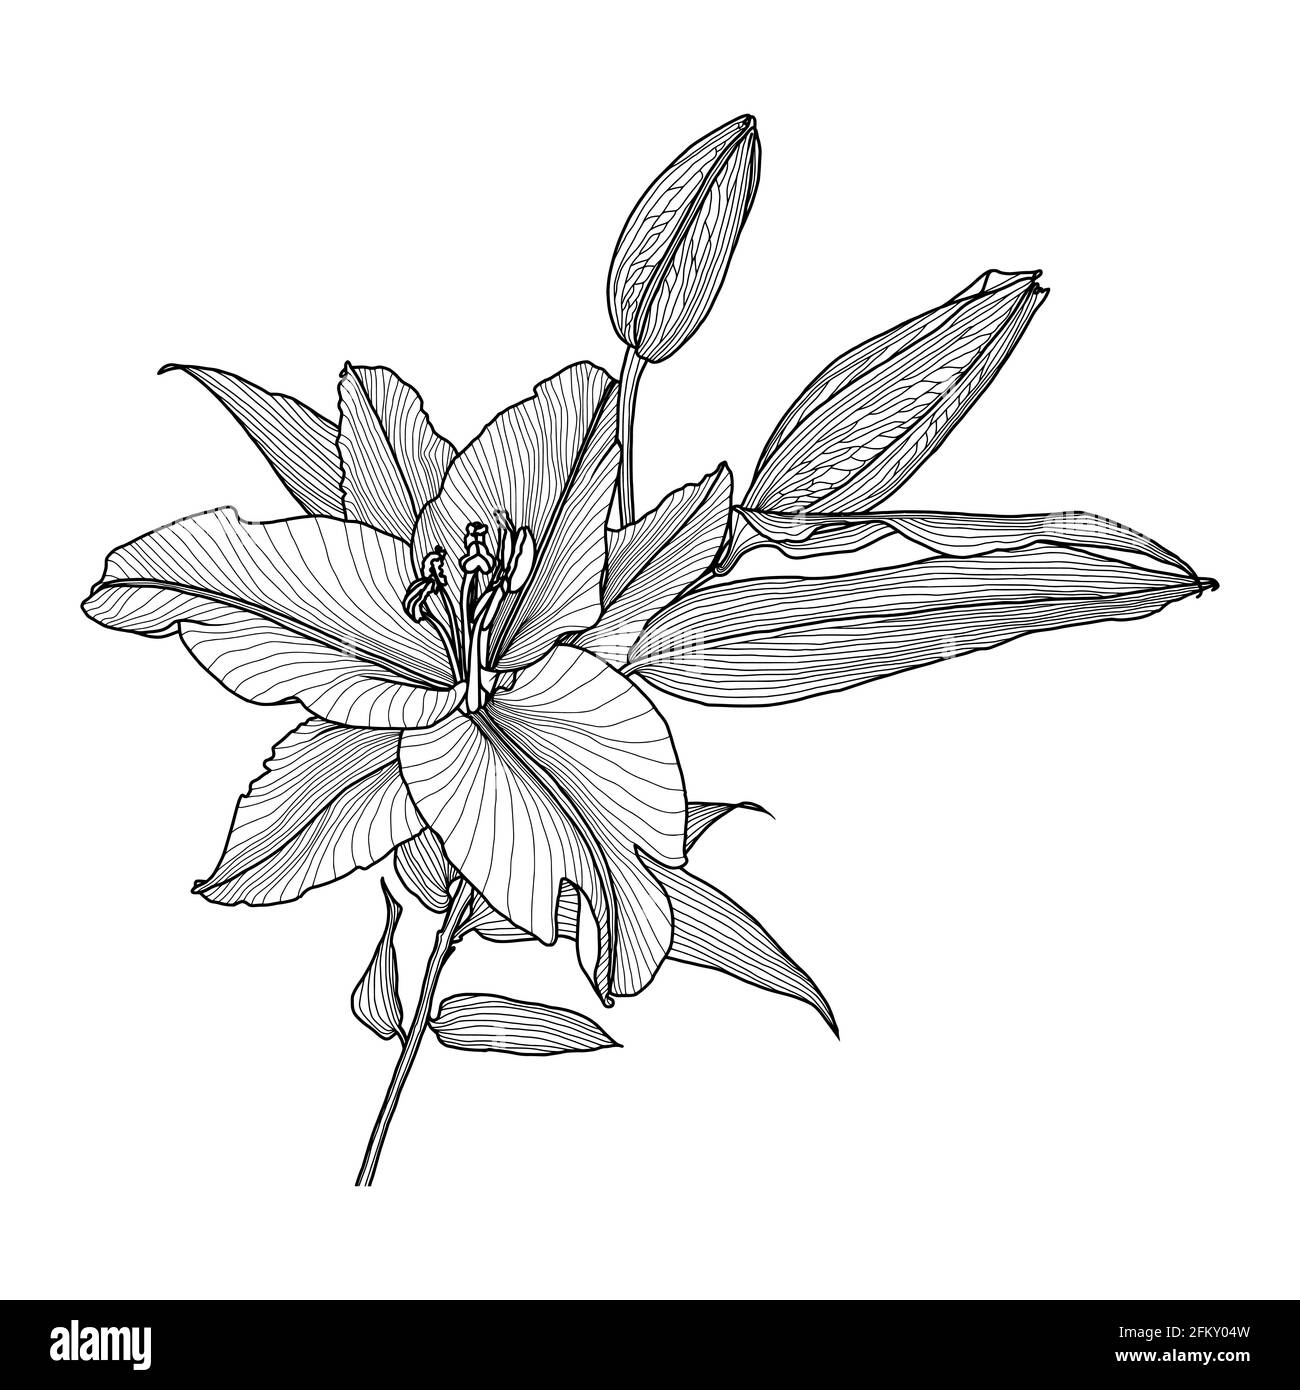 Dessin réaliste d'un nénuphar avec feuilles et bourgeons, graphiques noirs sur fond blanc, élément moderne d'art numérique pour le design. Illustration de Vecteur